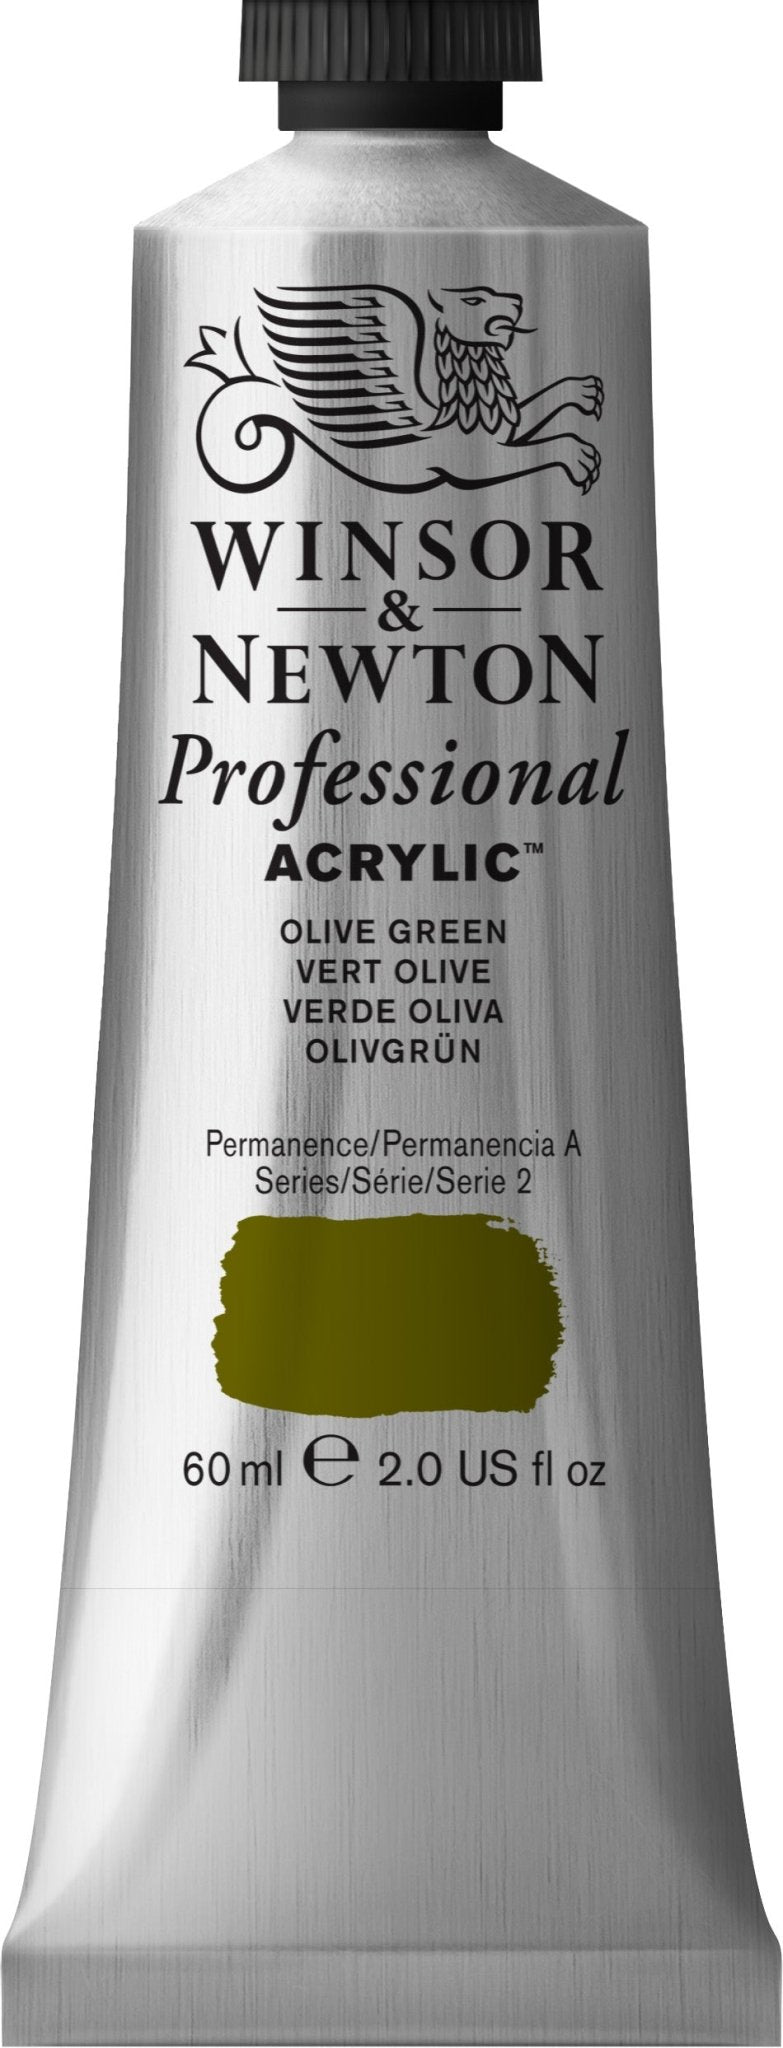 W & N Professional Acrylic 60ml Olive Green - theartshop.com.au